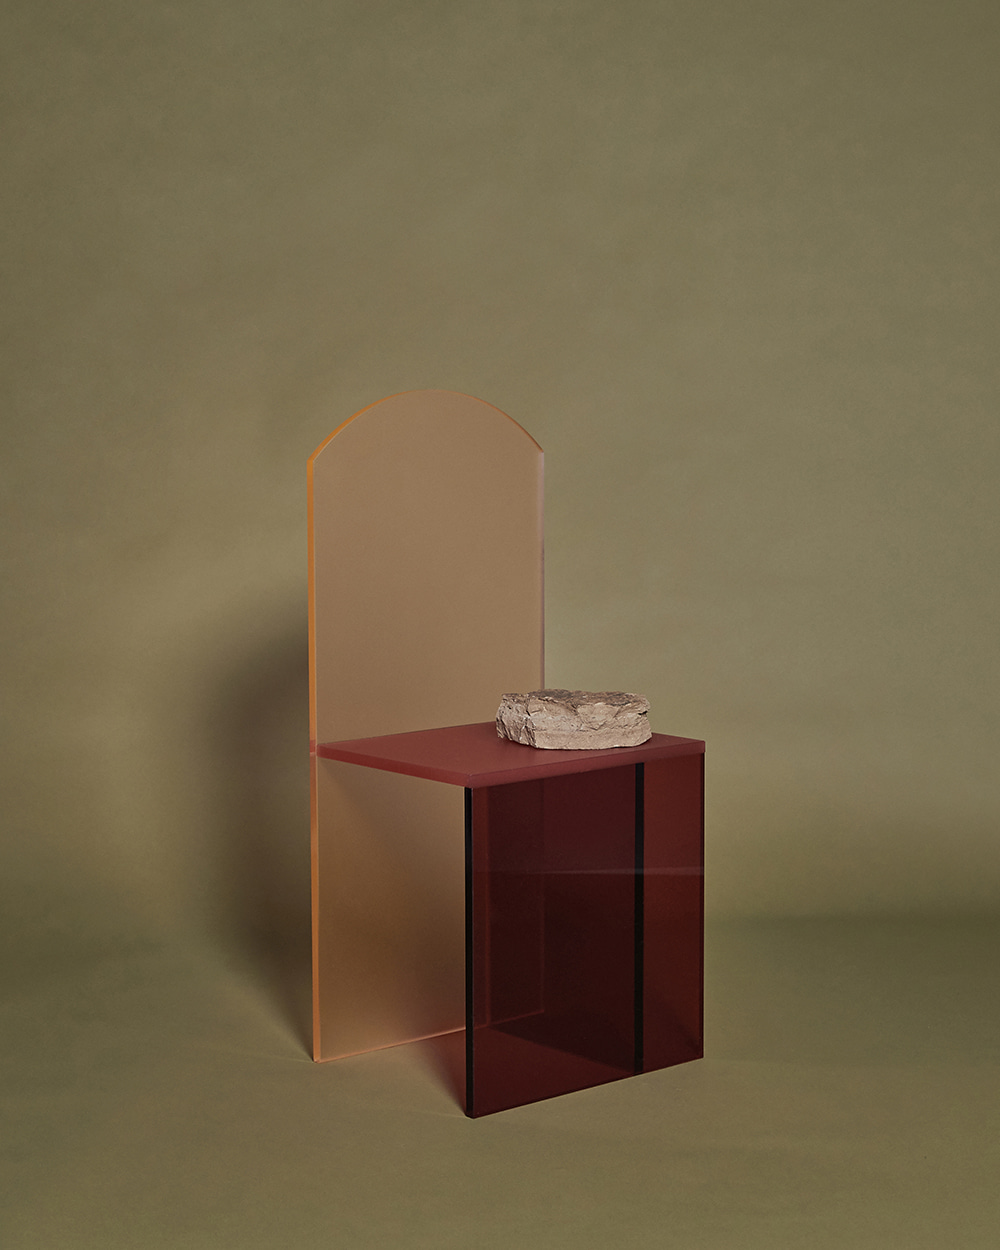 [ ARA JO ] Red Chair Object